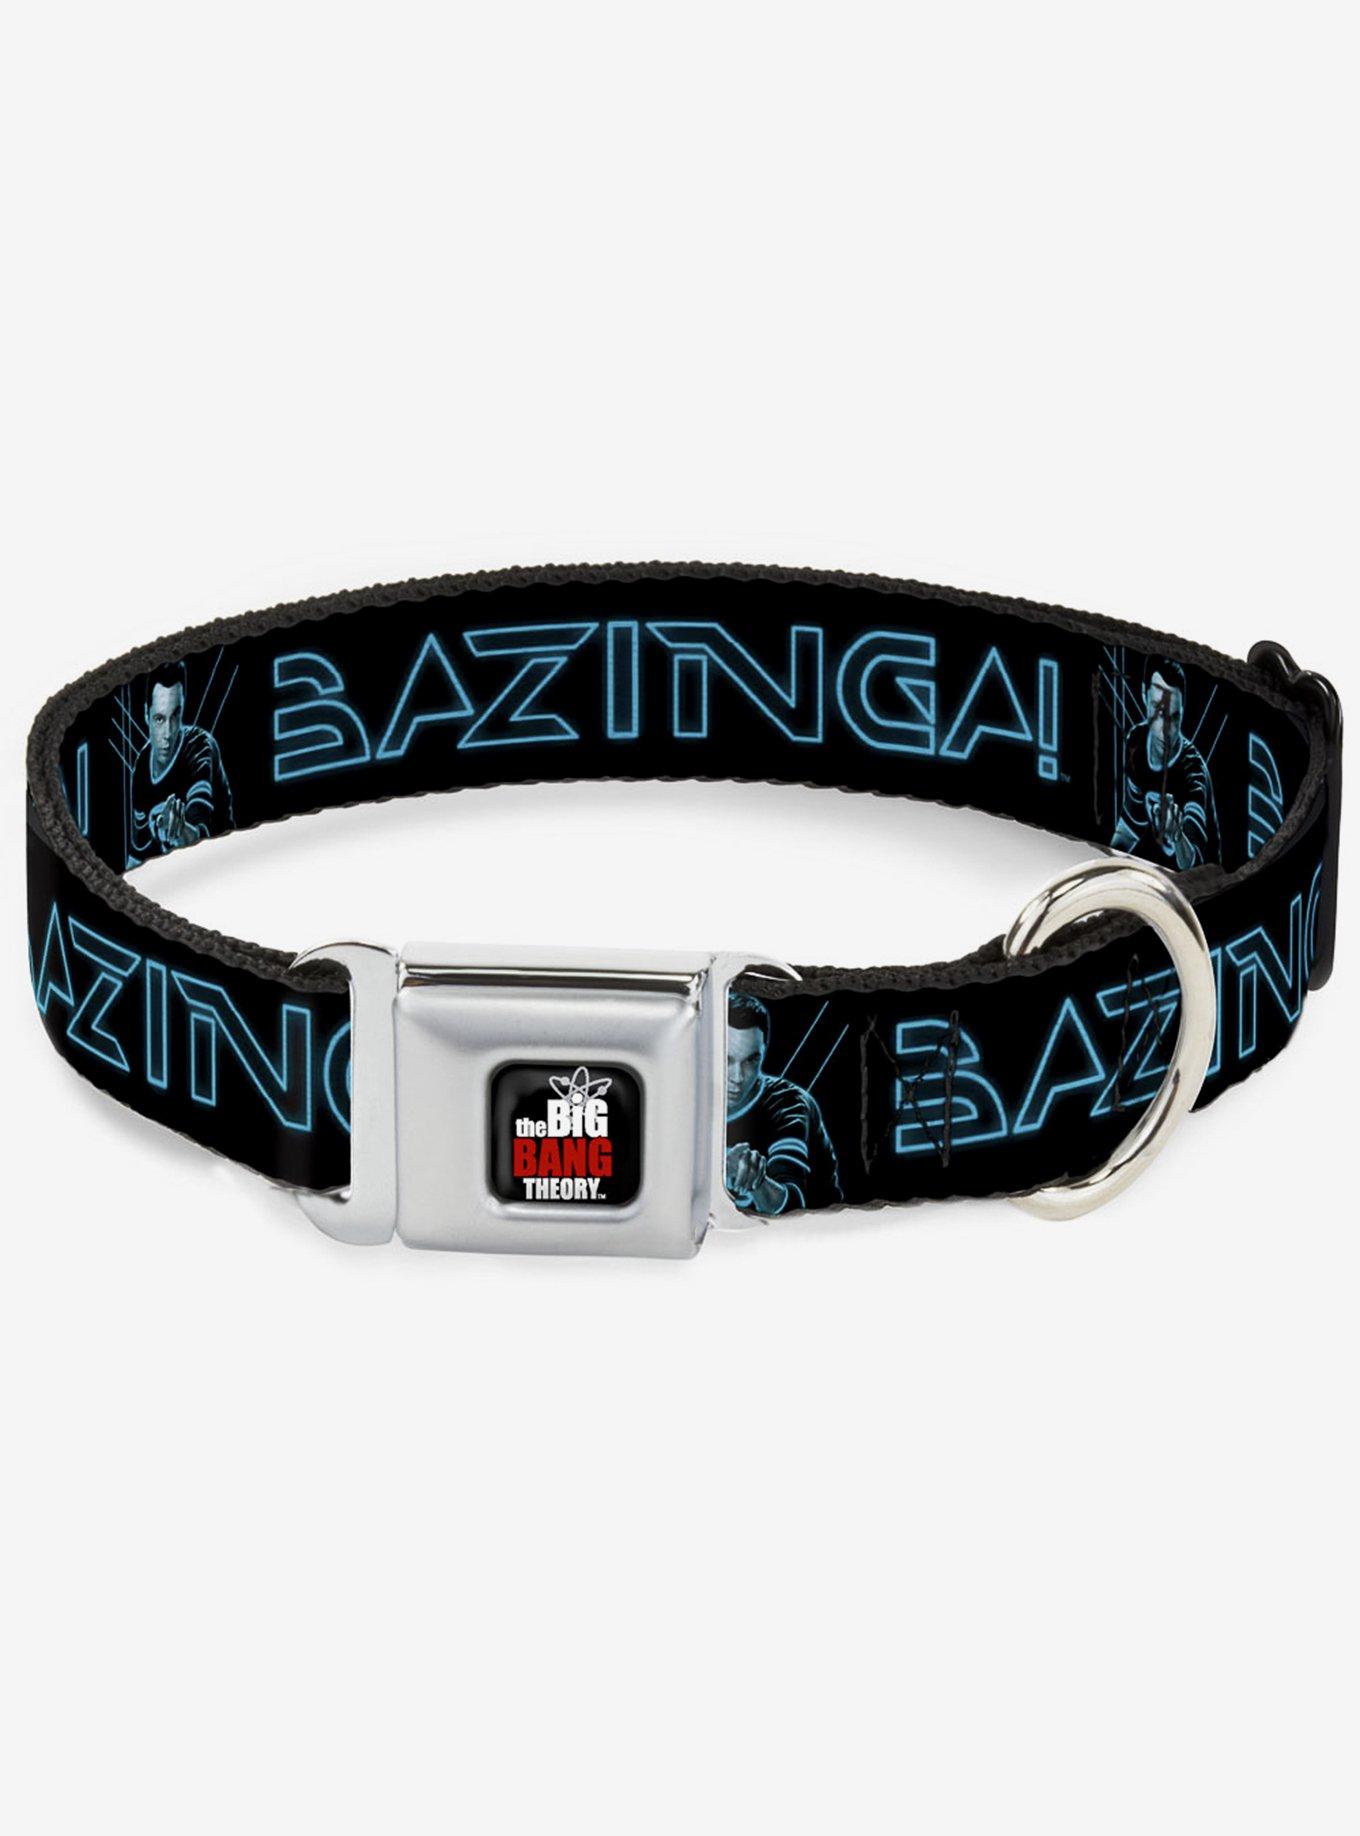 The Big Bang Theory Sheldon Bazinga Seatbelt Buckle Dog Collar, BLACK, hi-res